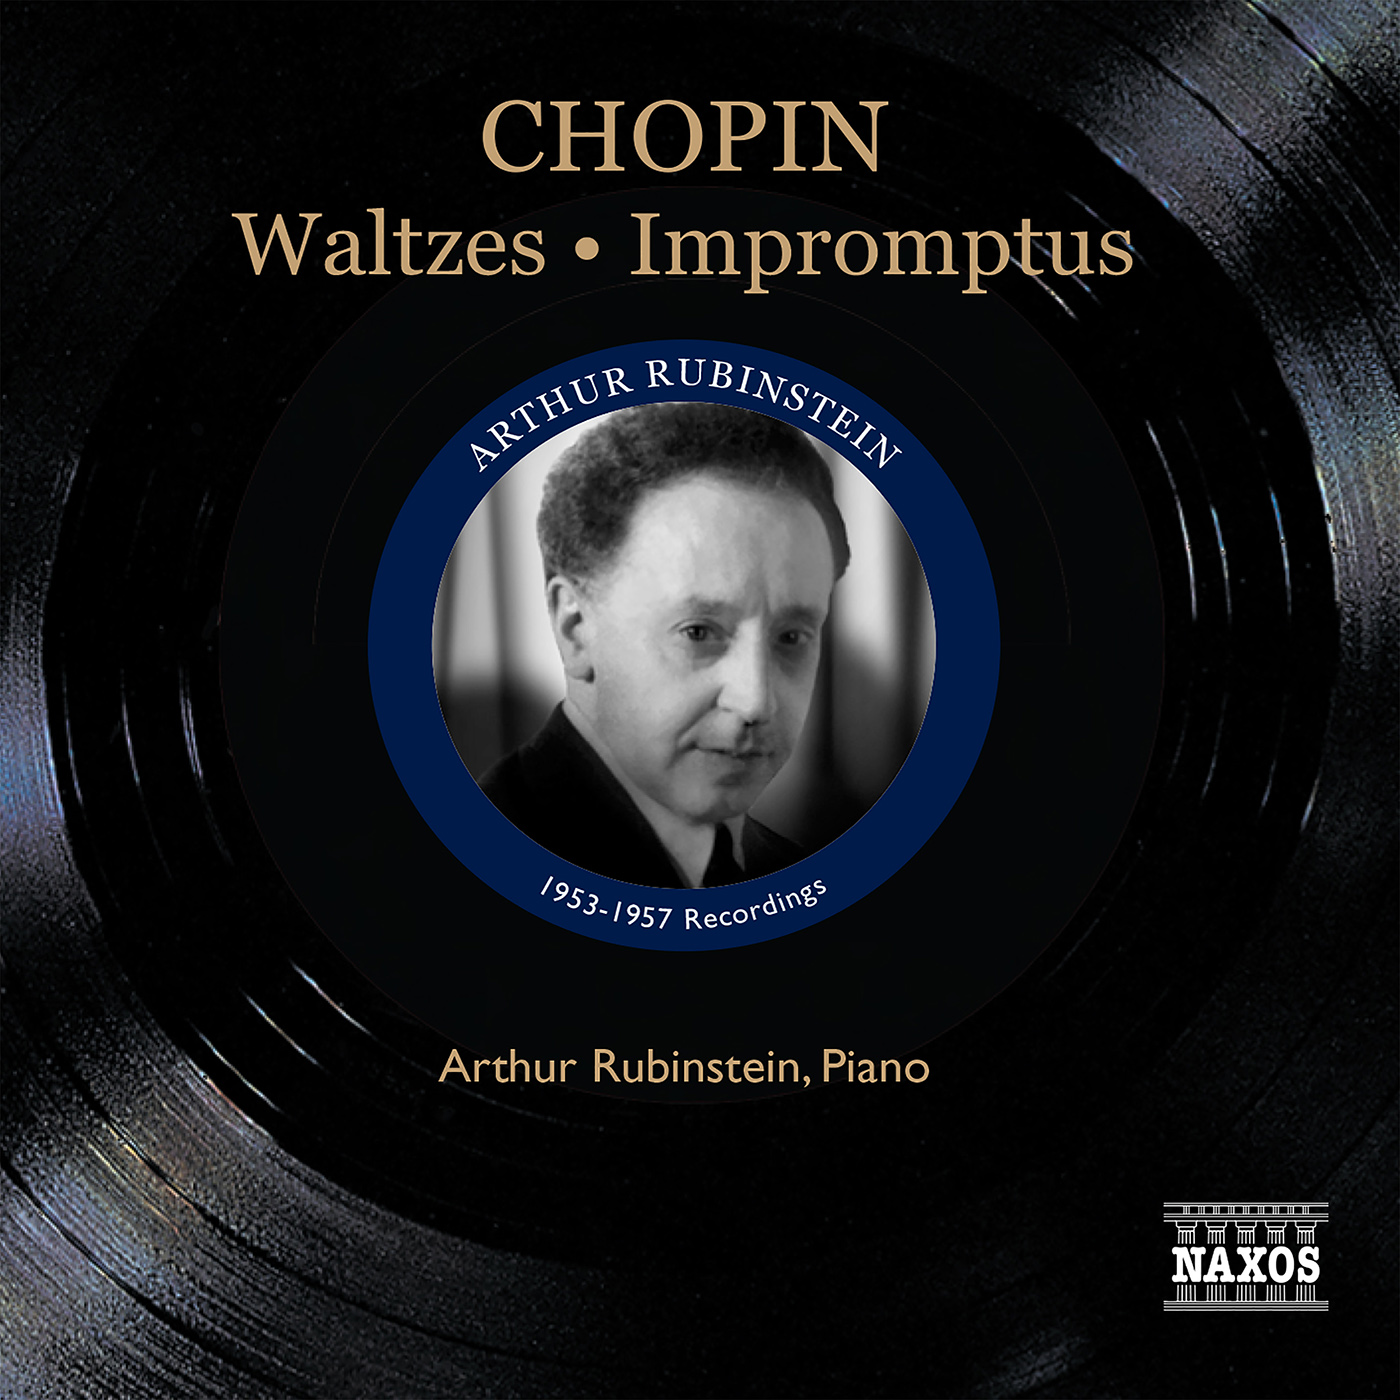 CHOPIN, F.: Waltzes / Impromptus (Rubinstein) (1953-1957)